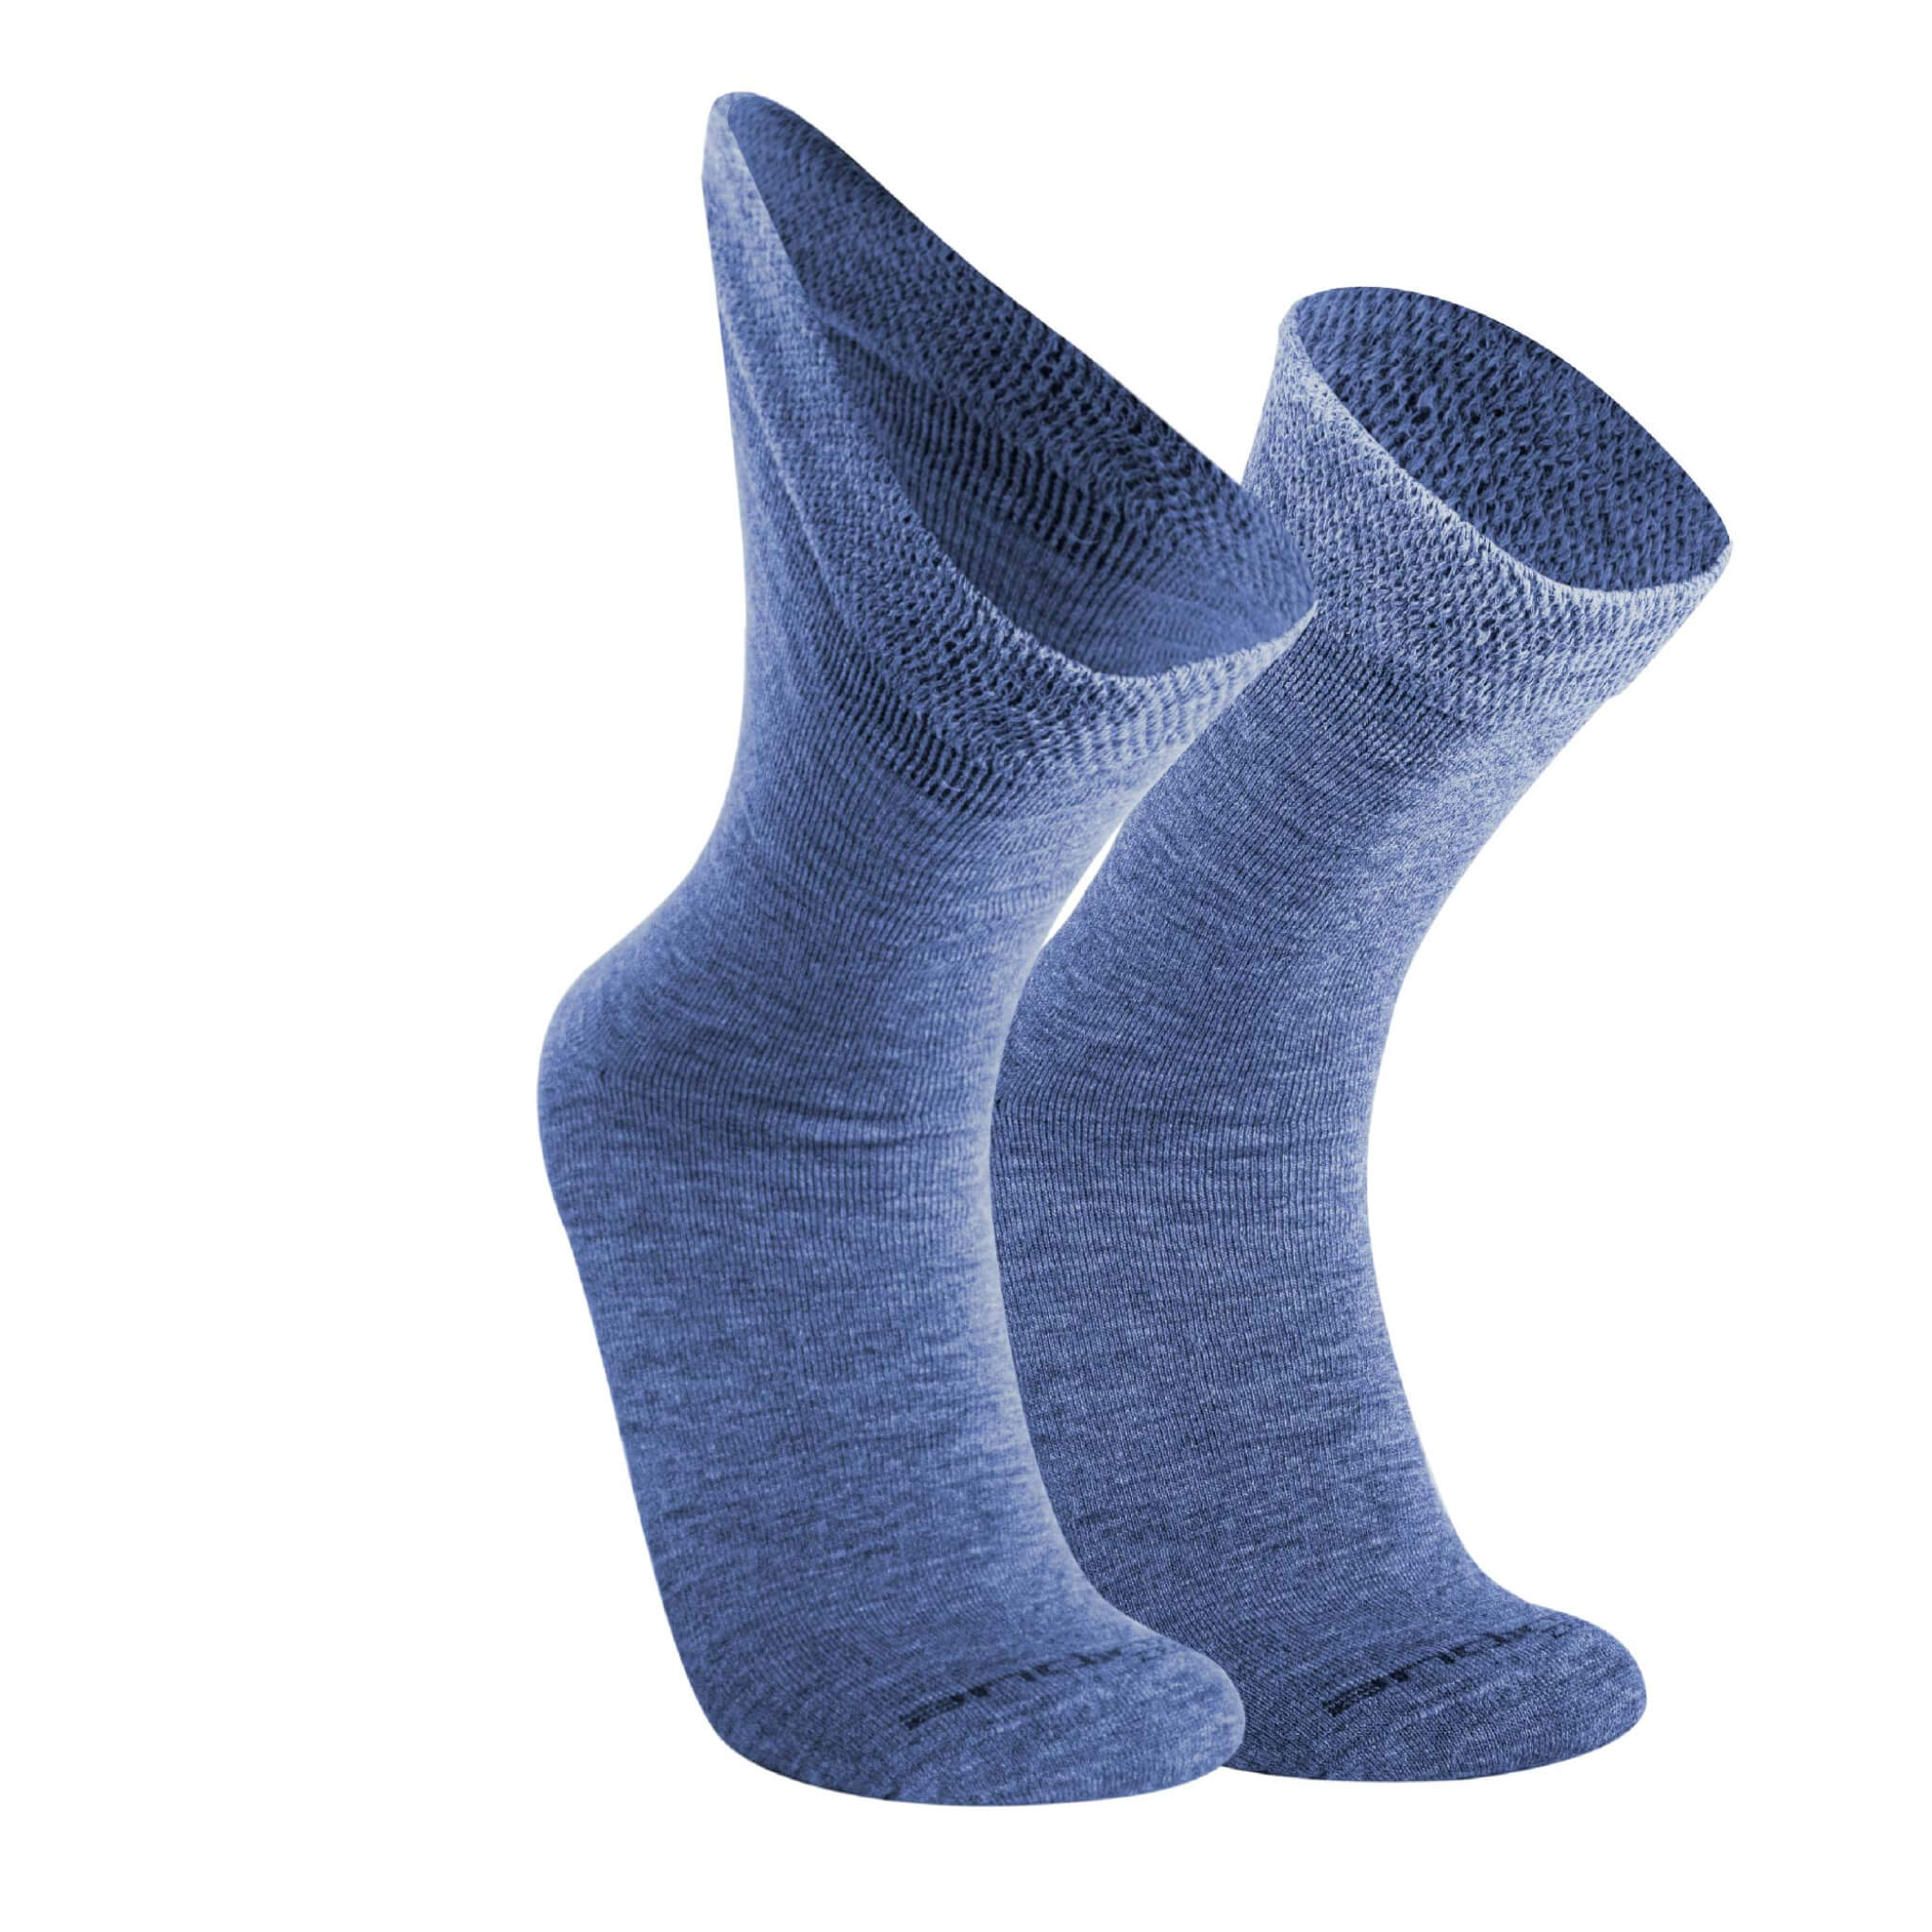 Diabetiker Socken für Damen und Herren aus Alpaka und Tencel von Alpakin in blau